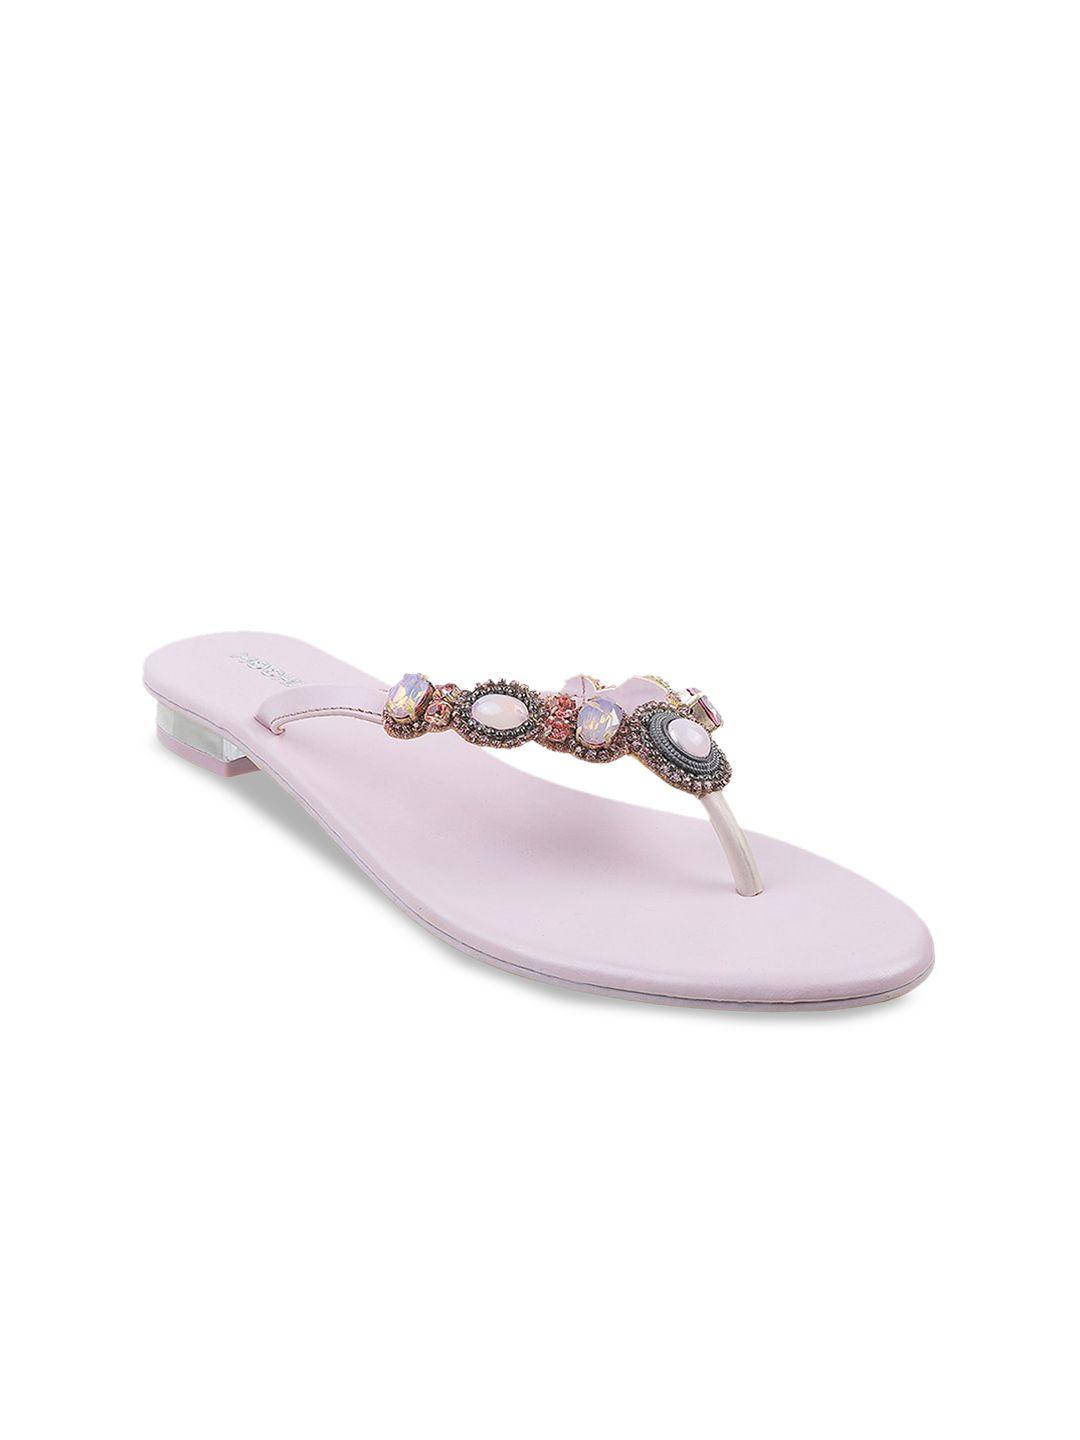 mochi women embellished open toe t-strap flats